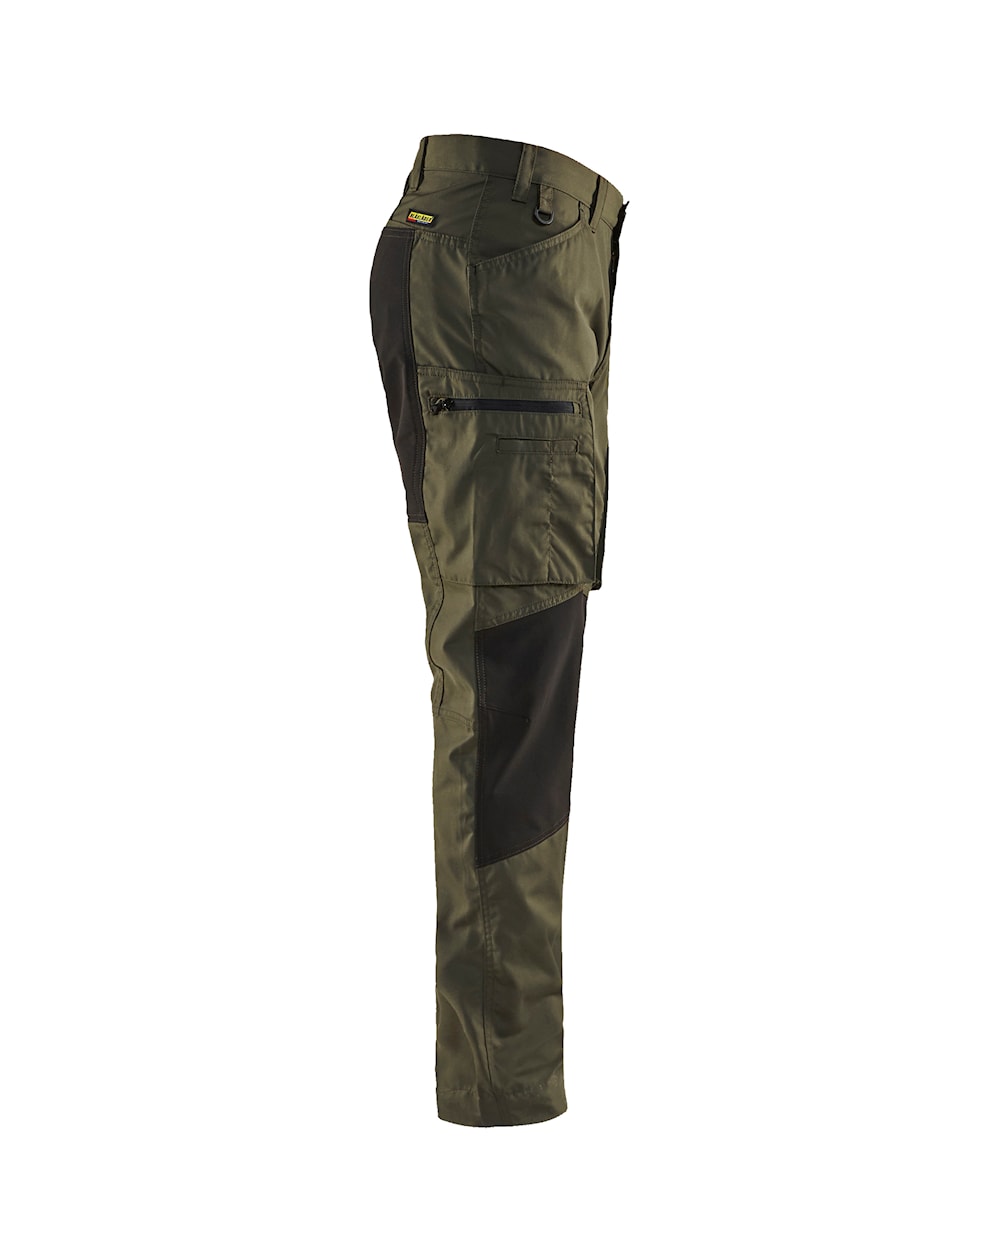 Blaklader 1655 5oz Service Pants with Stretch - 4599 Dk Olive Green/Black